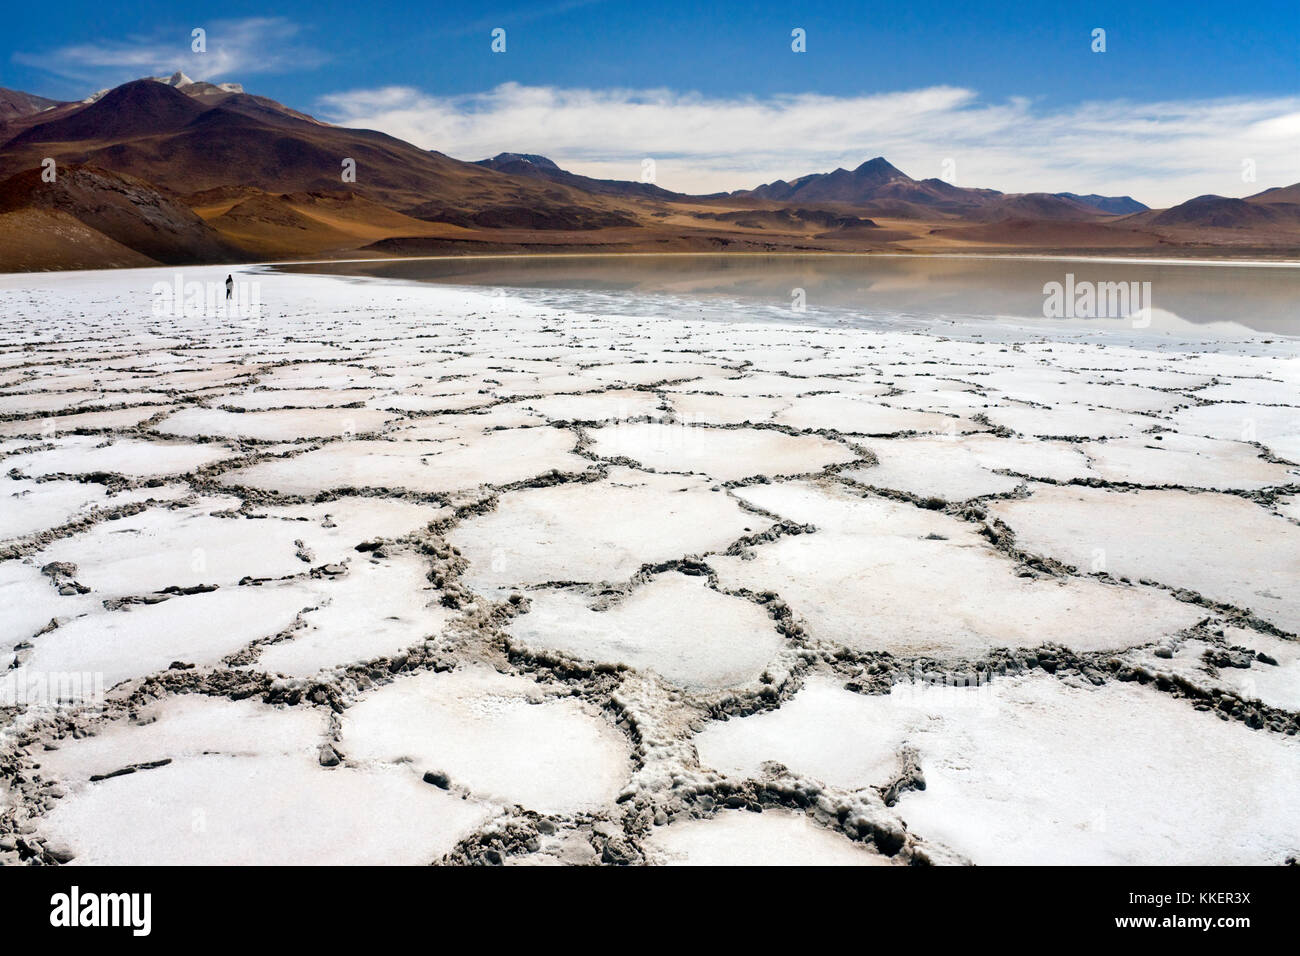 Remote Laguna Tuyajto e le Saline (3800m) nel deserto di Atacama nel nord del Cile, America del Sud. Foto Stock